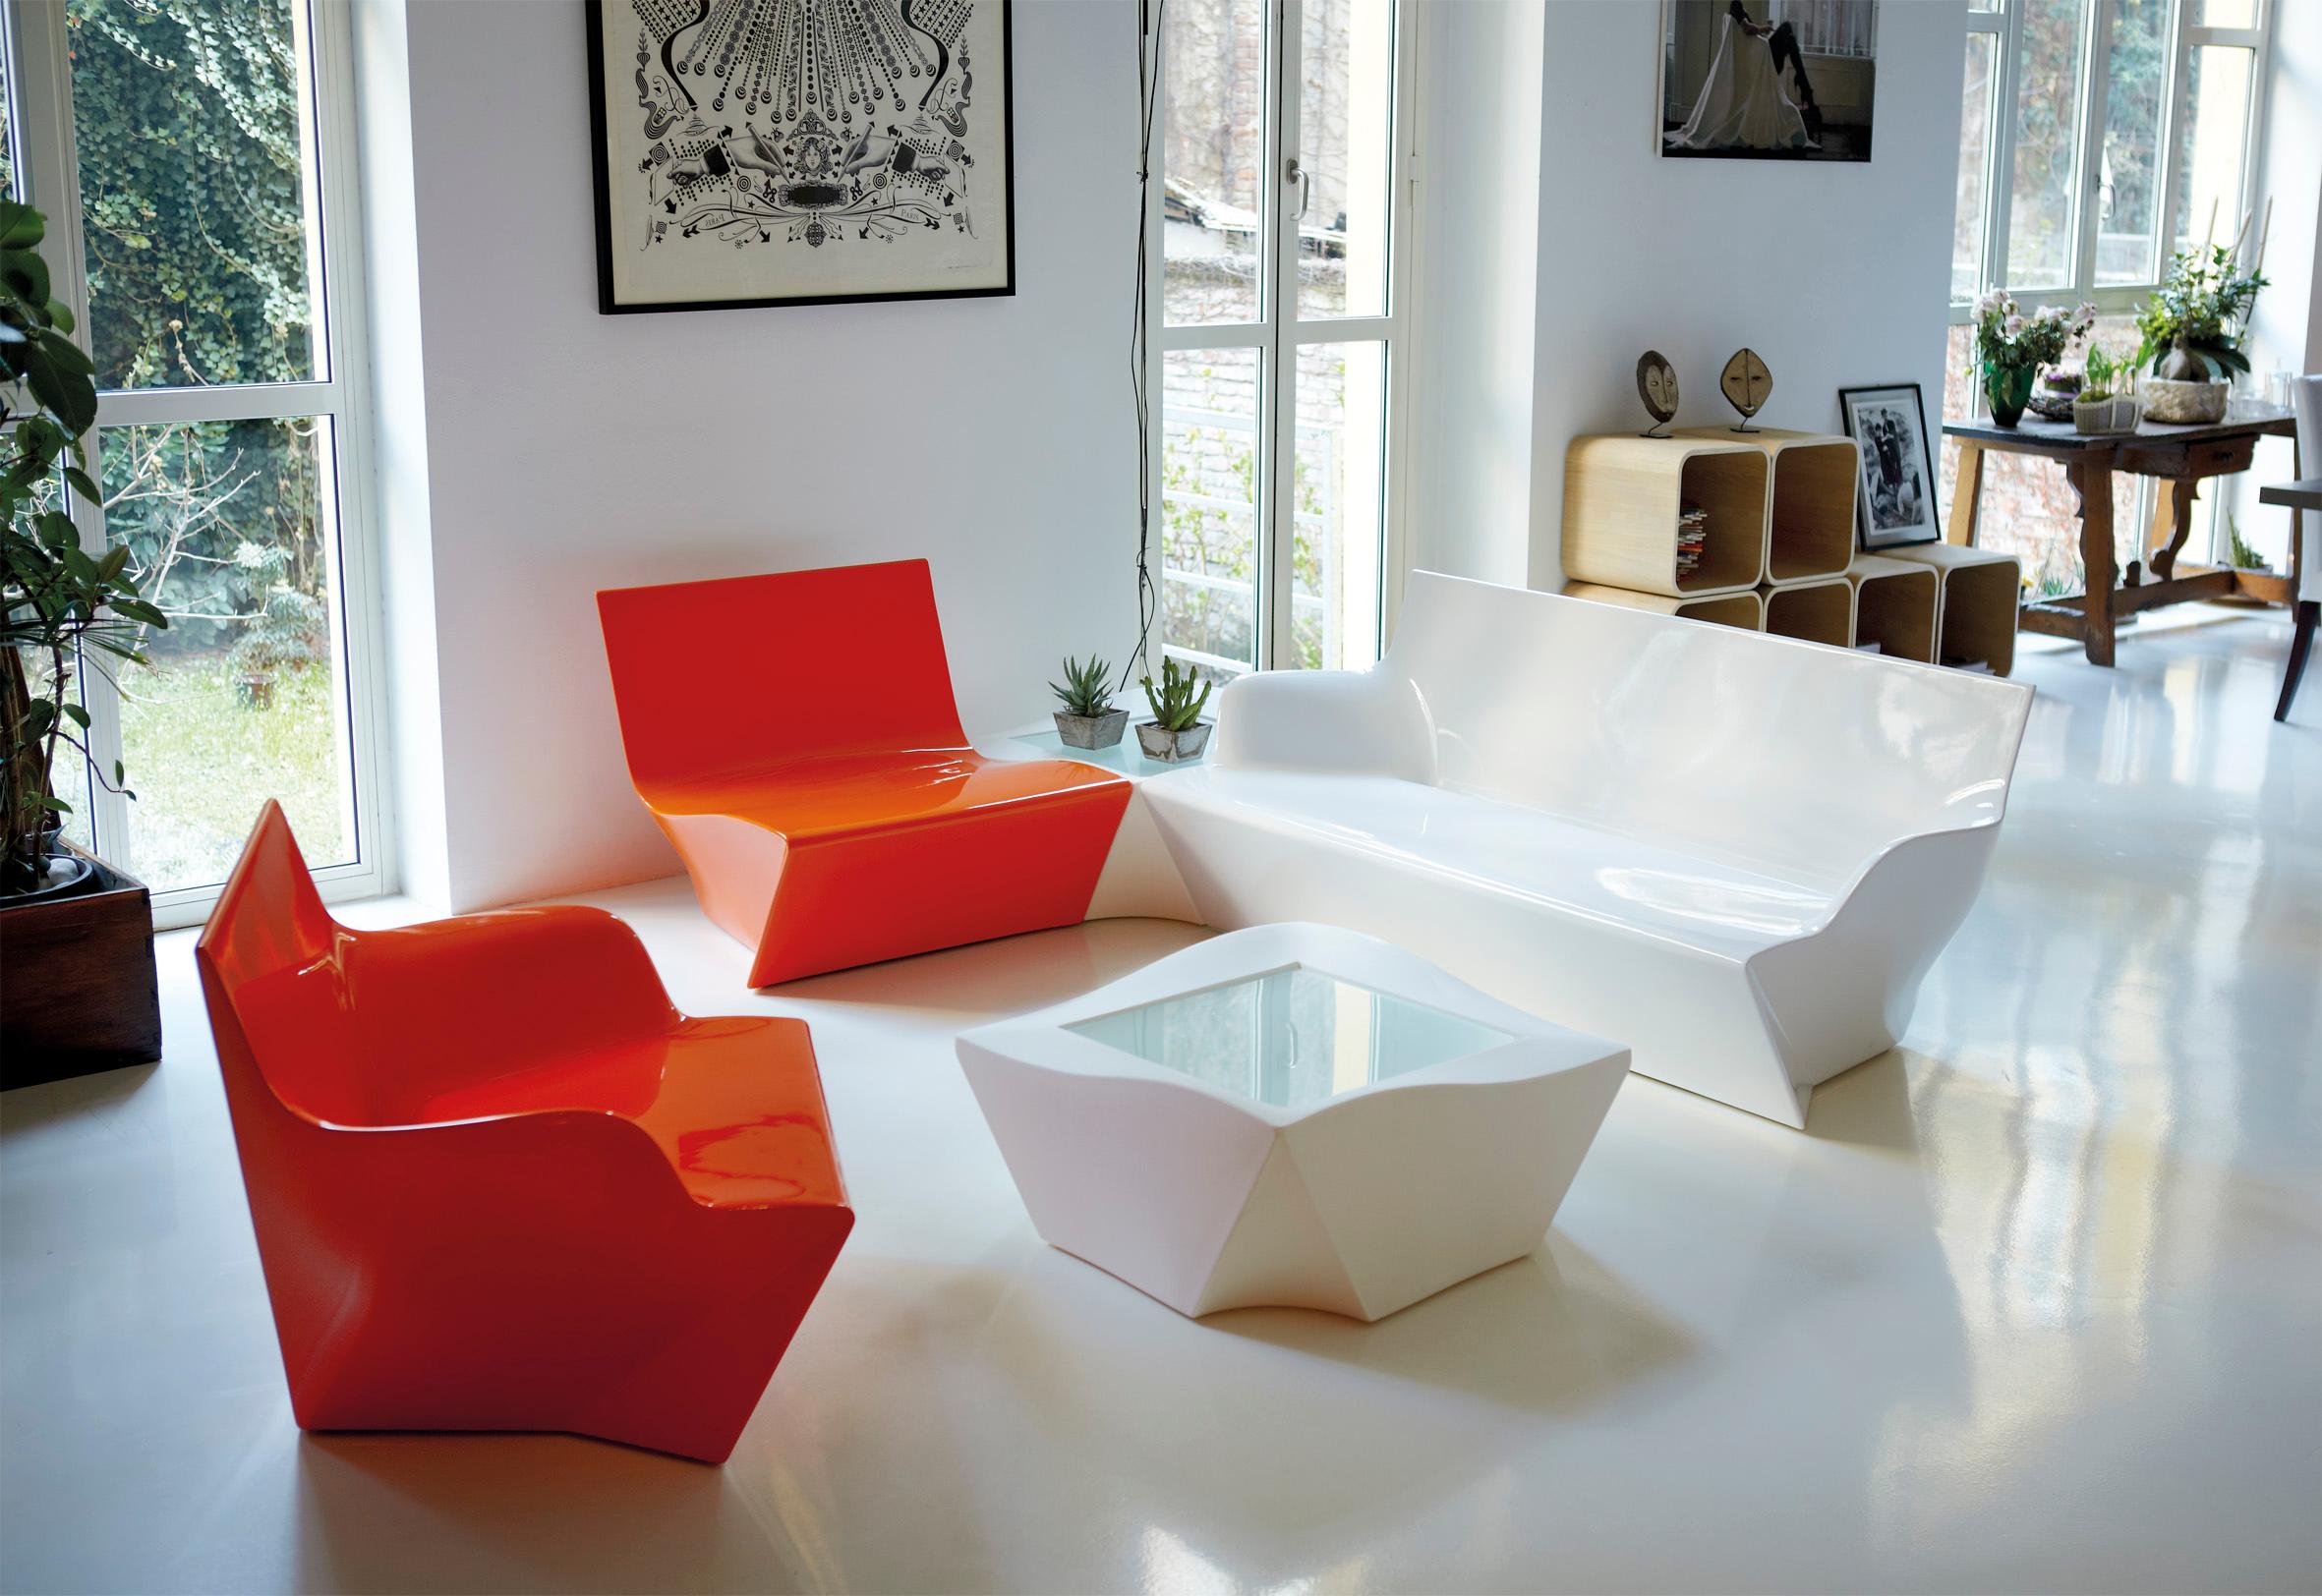 Saffrongelber Kami Ichi niedriger Stuhl von Marc Sadler
Abmessungen: T 75 x B 80 x H 70 cm. Sitzhöhe: 35 cm.
MATERIALEN: Polyethylen.
Gewicht: 15 kg.

Erhältlich in verschiedenen Farbvarianten. Dieses Produkt ist für die Verwendung im Innen- und